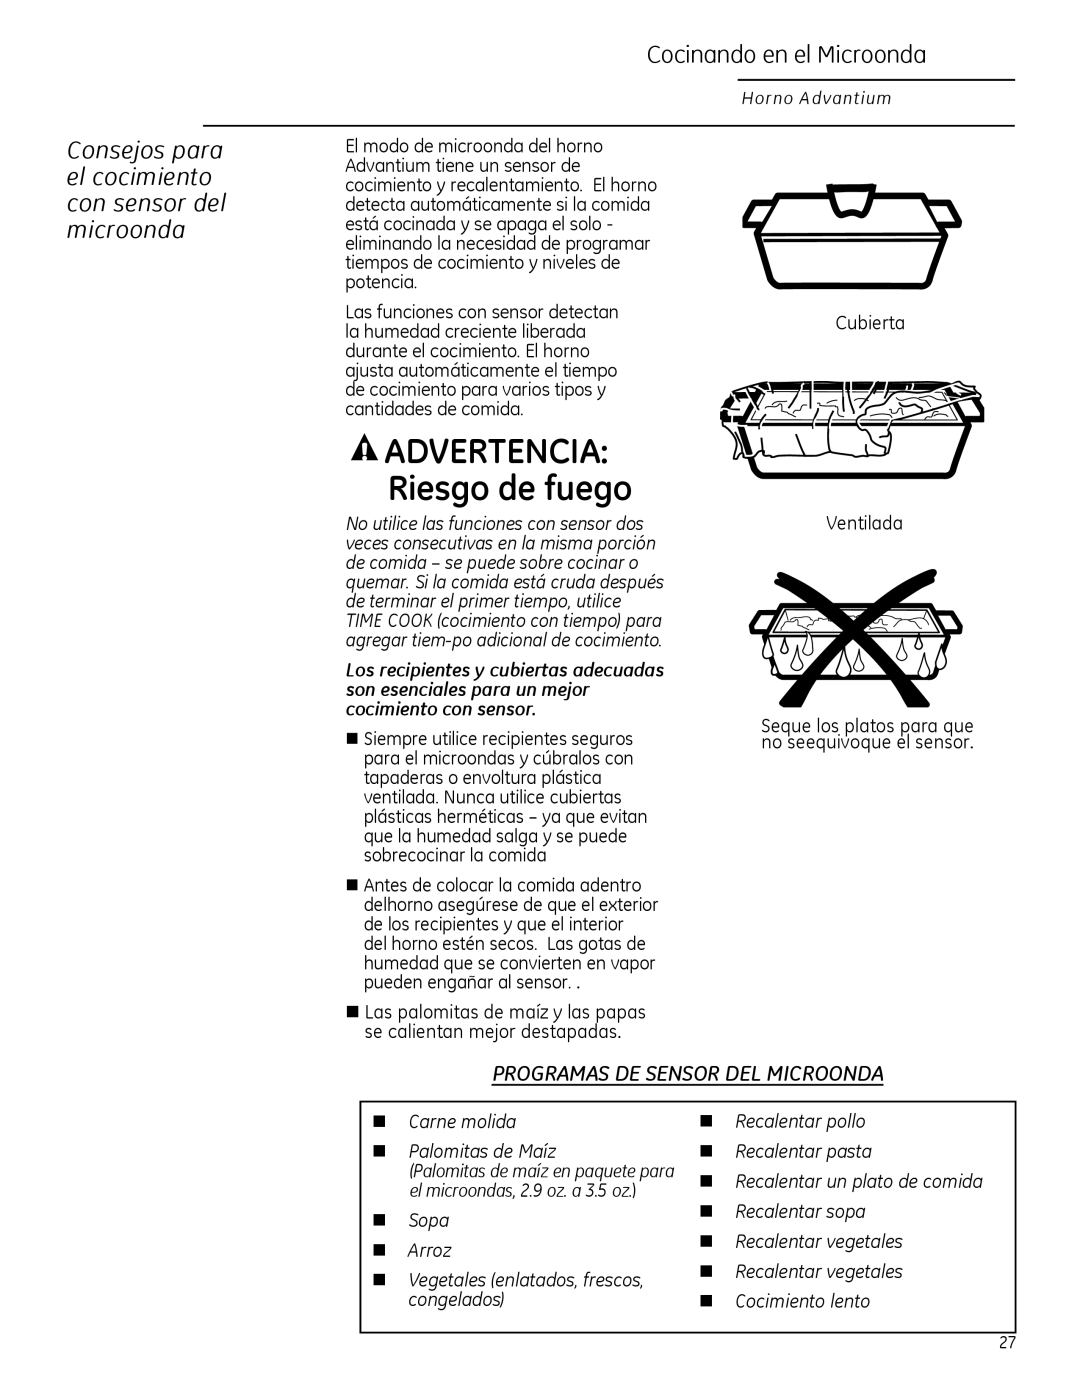 GE ZSA2201 ADVERTENCIA Riesgo de fuego, Consejos para el cocimiento con sensor del microonda, Cocinando en el Microonda 